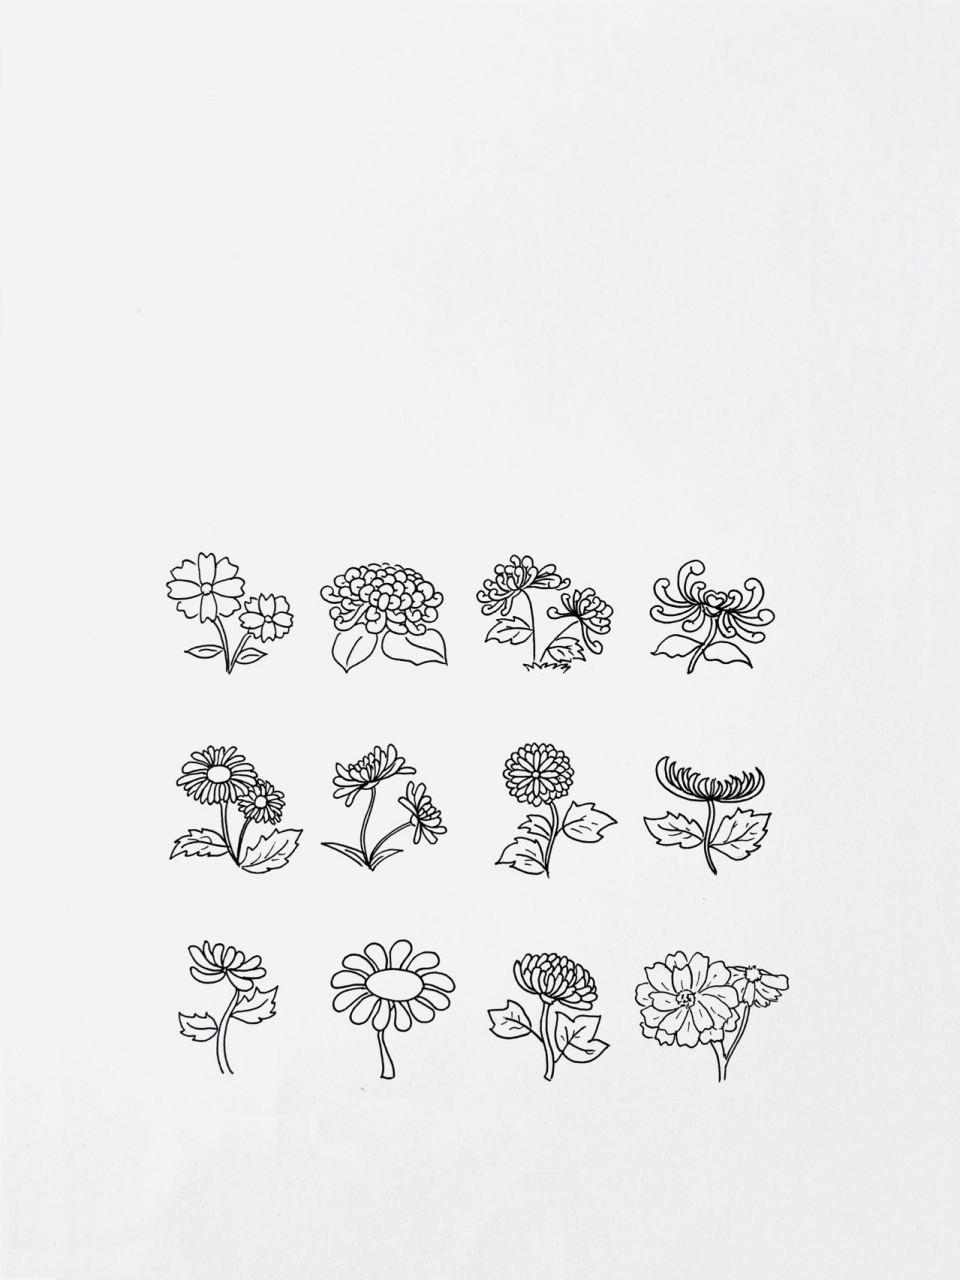 【简笔画】菊花 分享一组植物类简笔画—菊花 距离之前200幅简笔画的